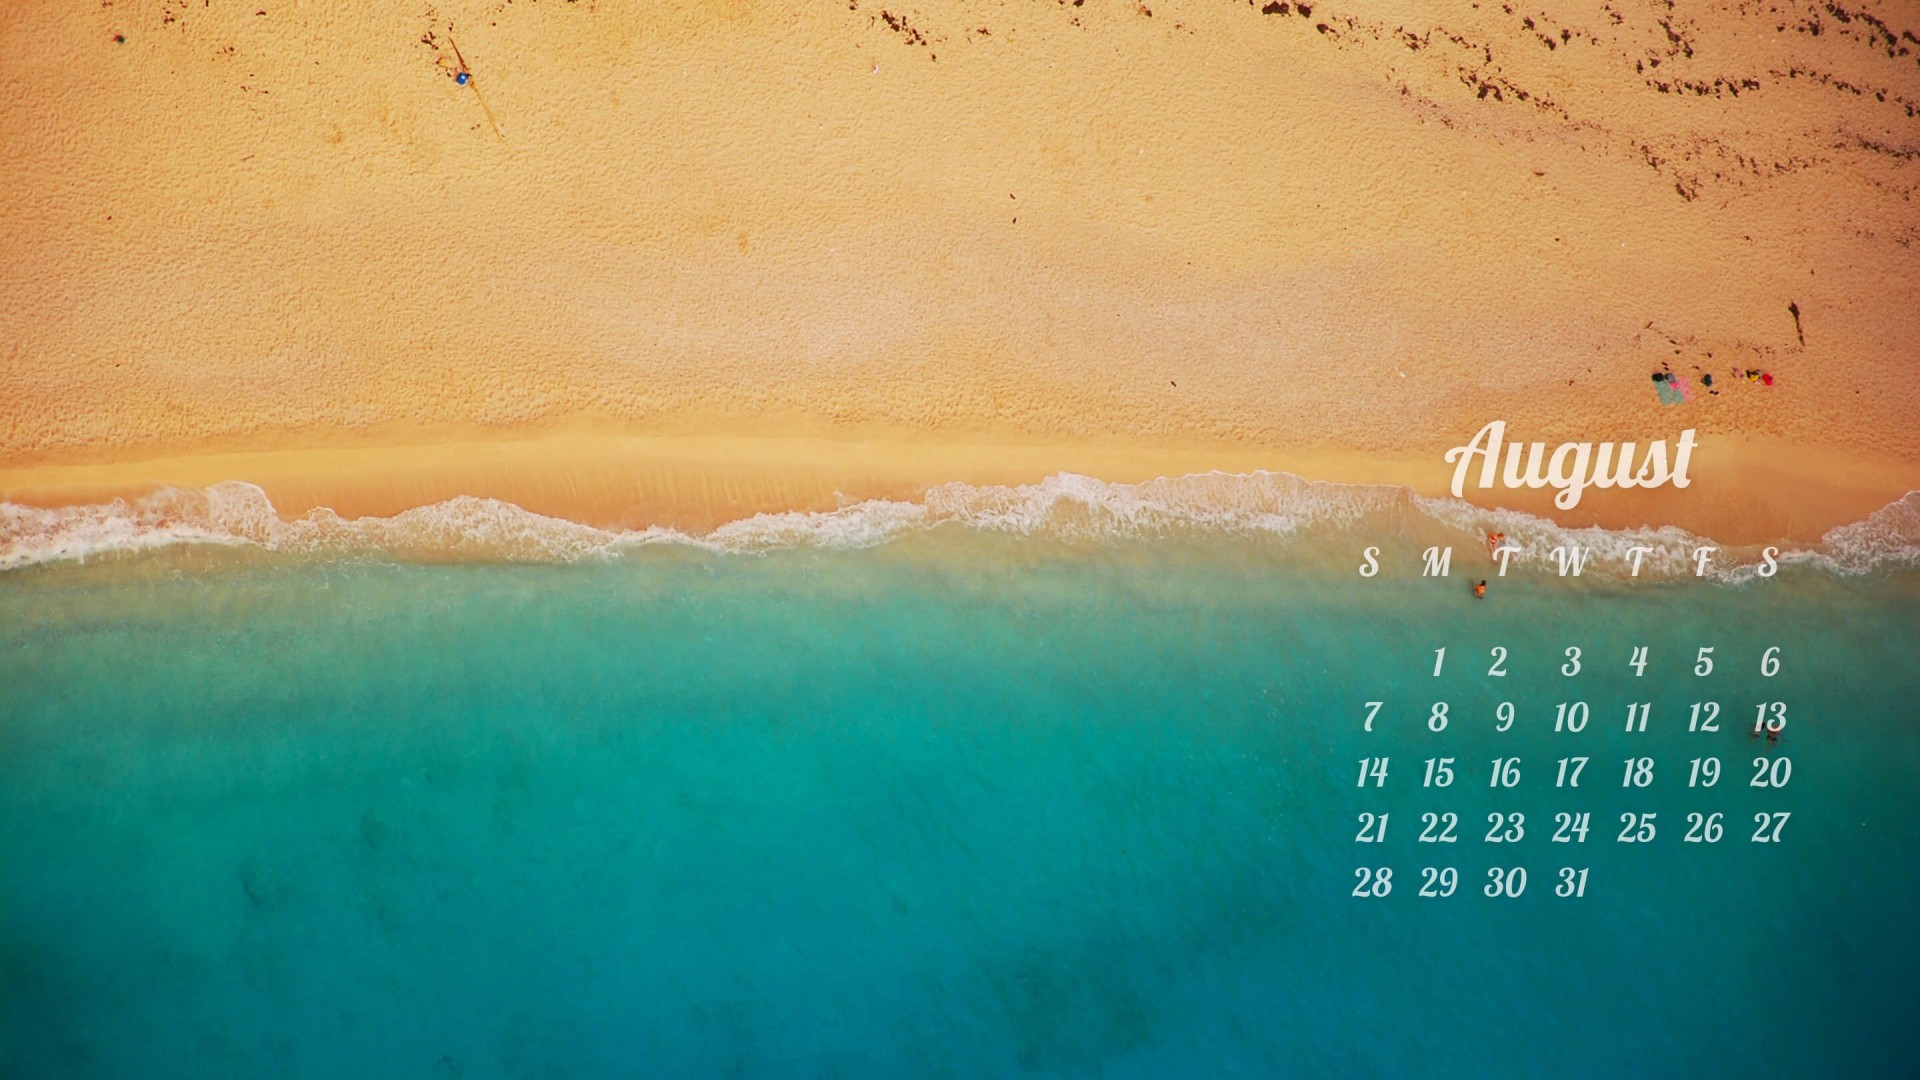 August 2016 Calendar Wallpaper for Desktop 1920x1080